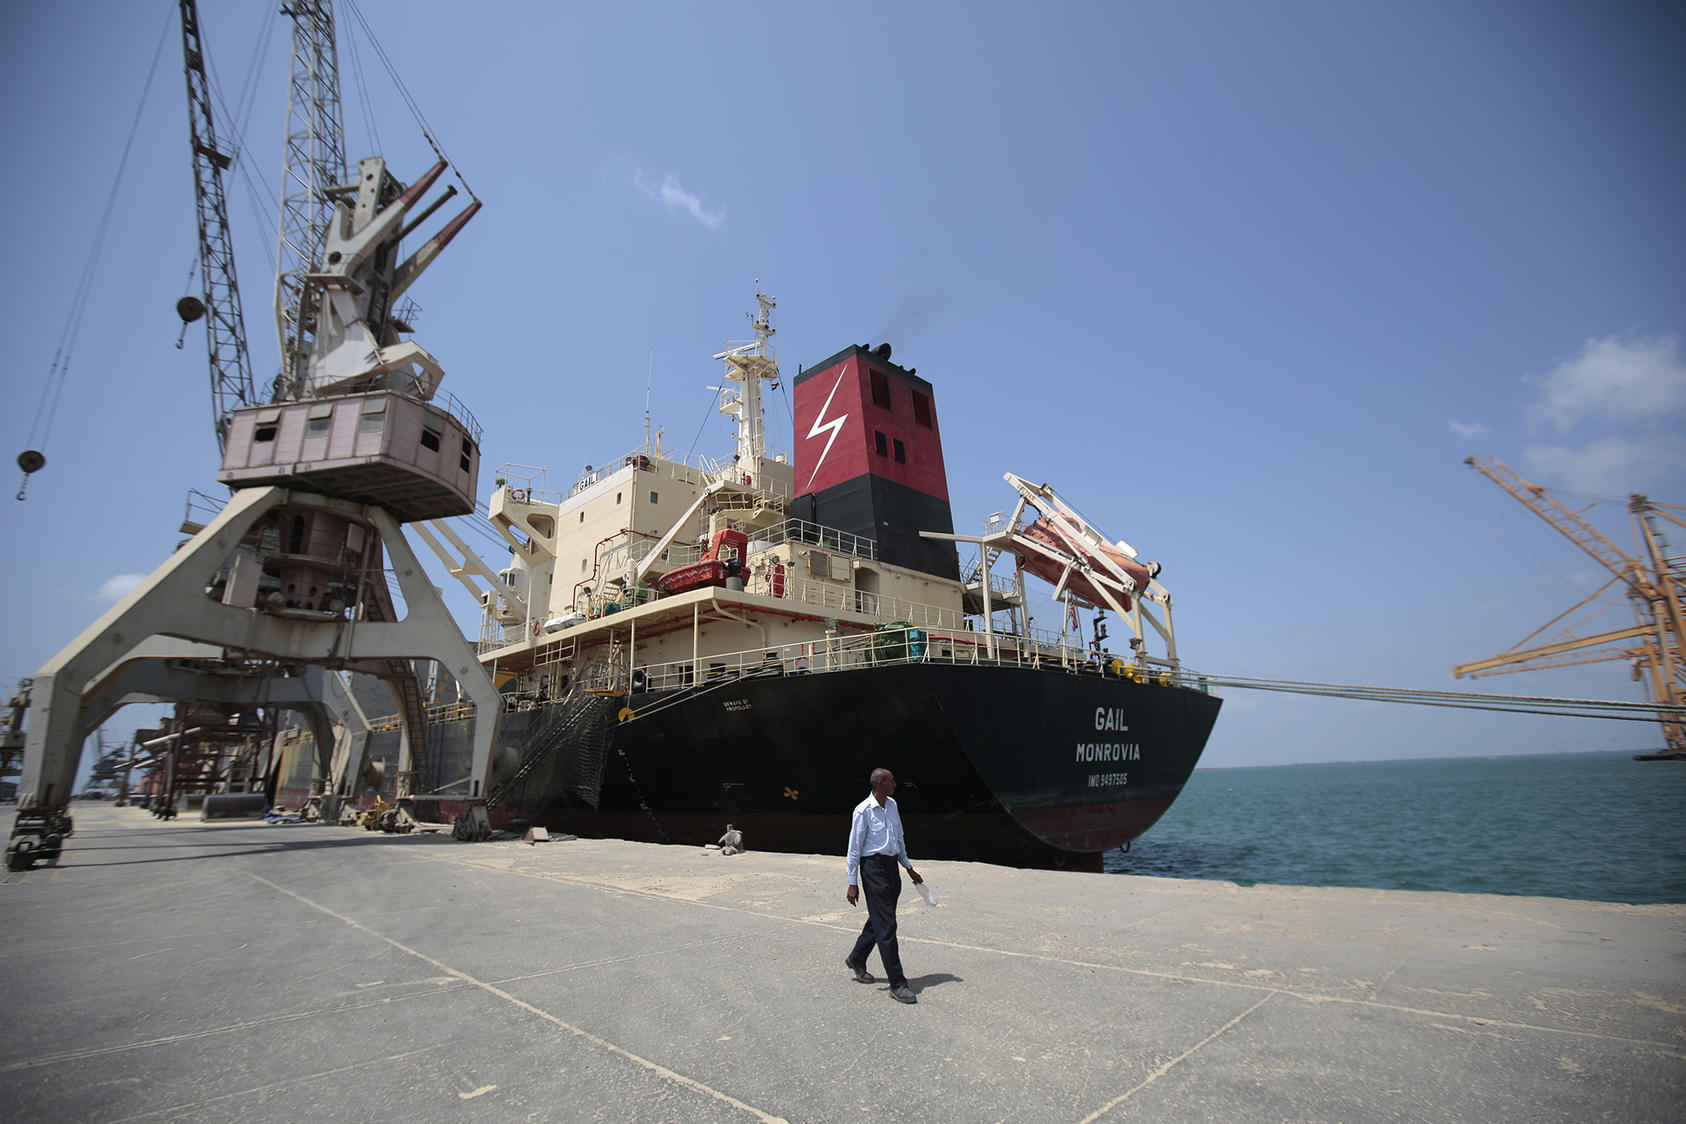 A cargo ship docked at the port in Hodeida, Yemen, on September 29, 2018. (Hani Mohammed/AP)